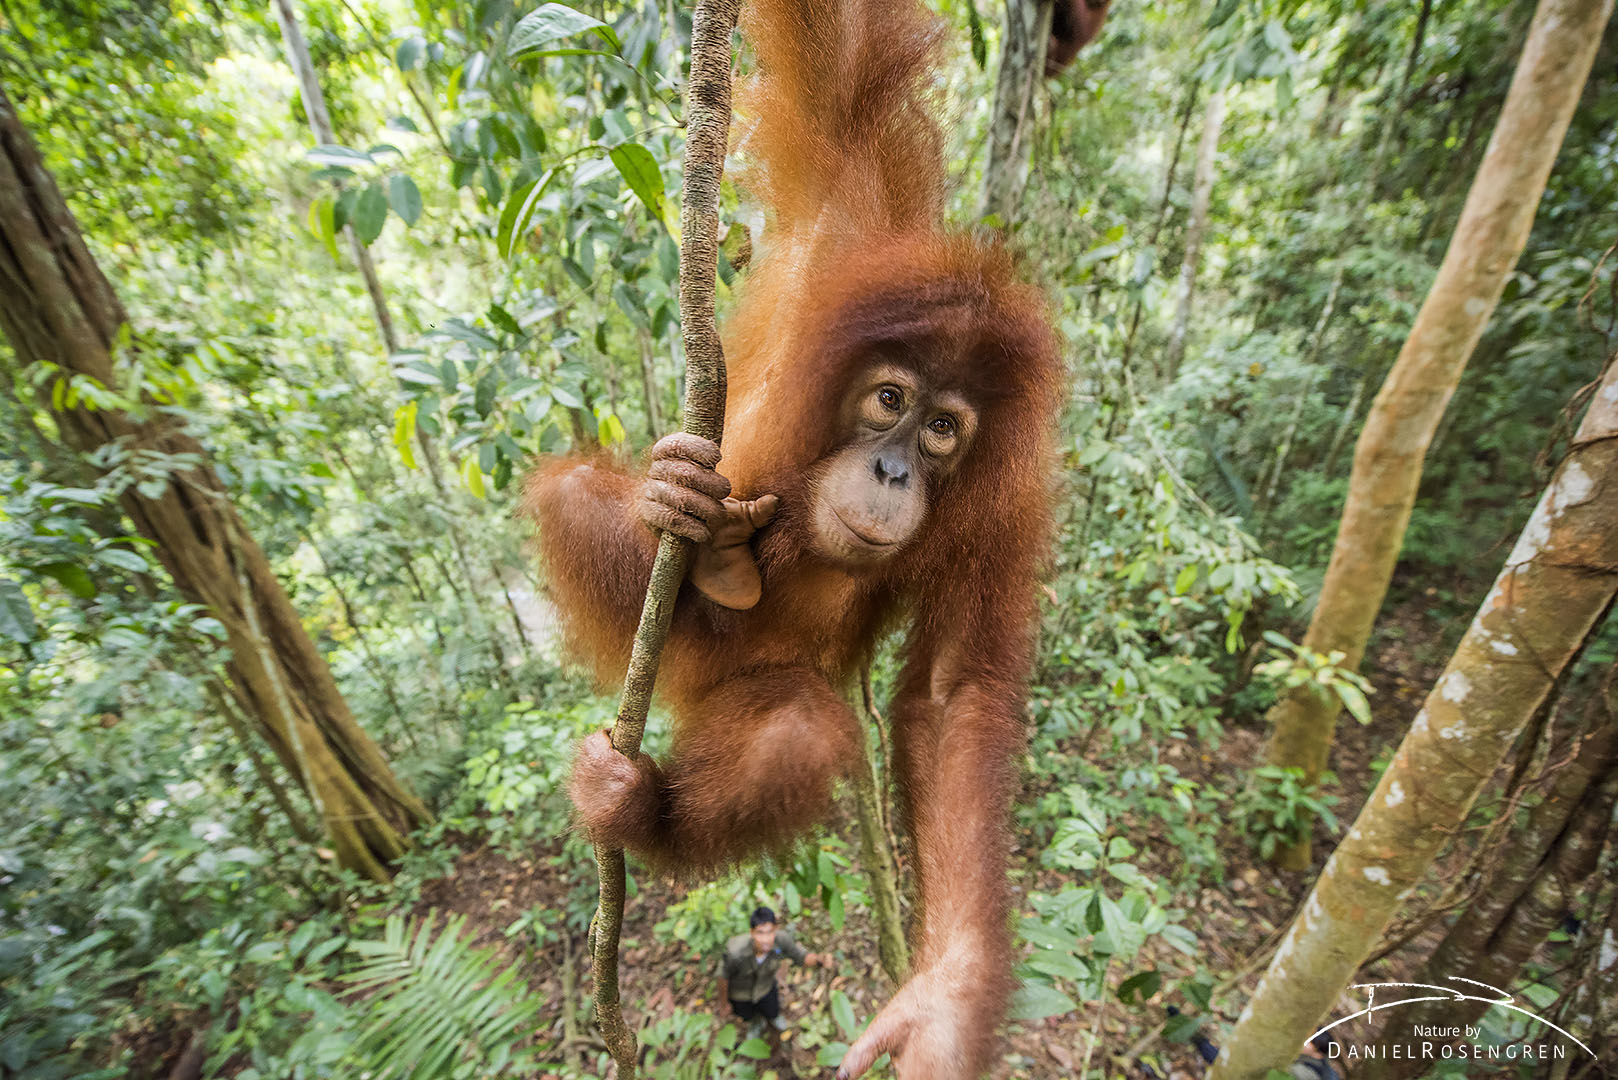 A young Orang-utan out on a limb, her trainer is seen below. © Daniel Rosengren